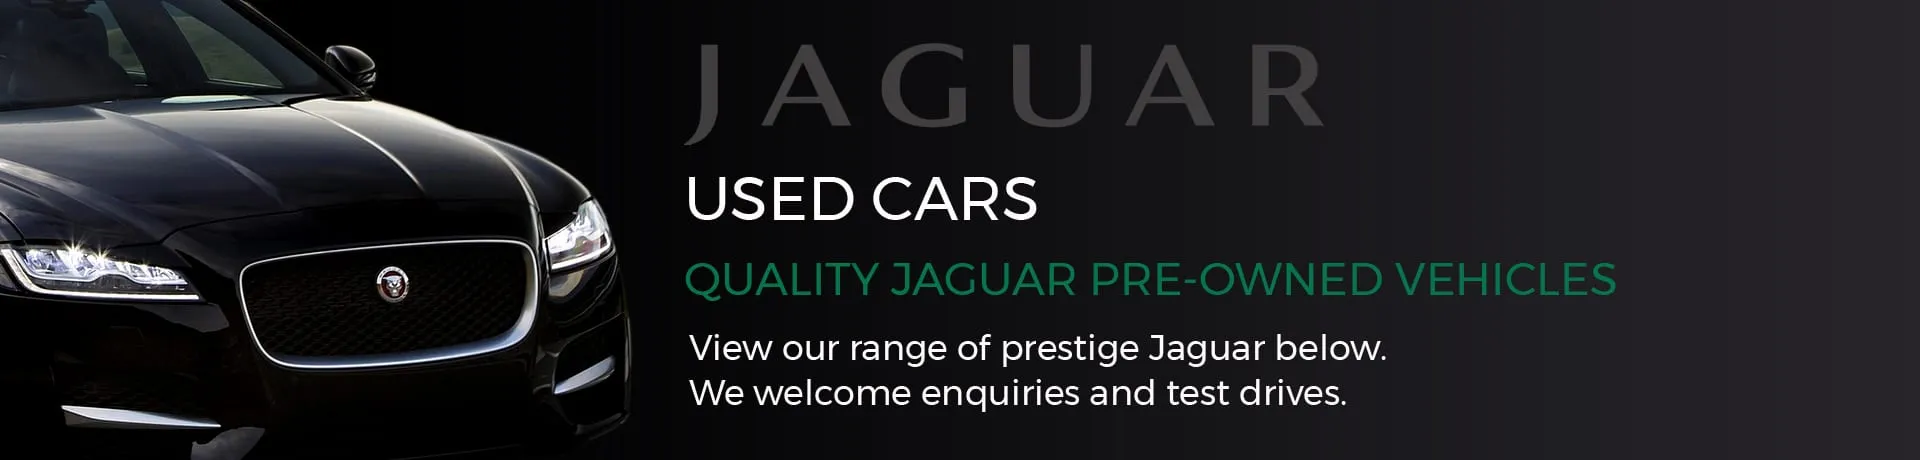 Jaguar Used Cars